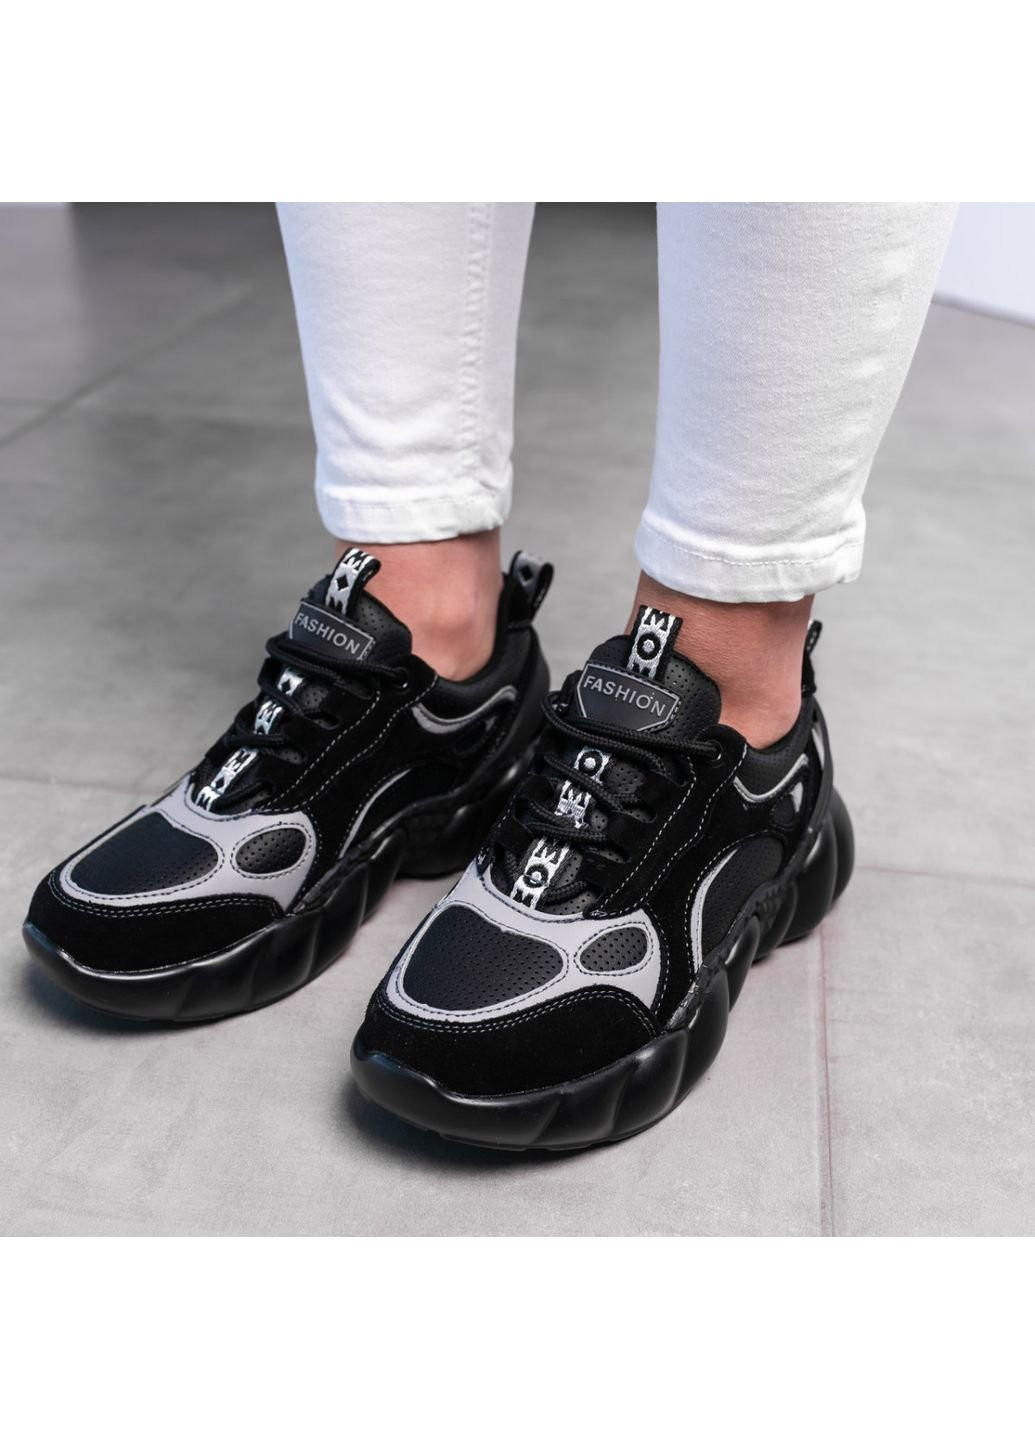 Чорні осінні кросівки жіночі walter 2988 38 24,5 см чорний Fashion